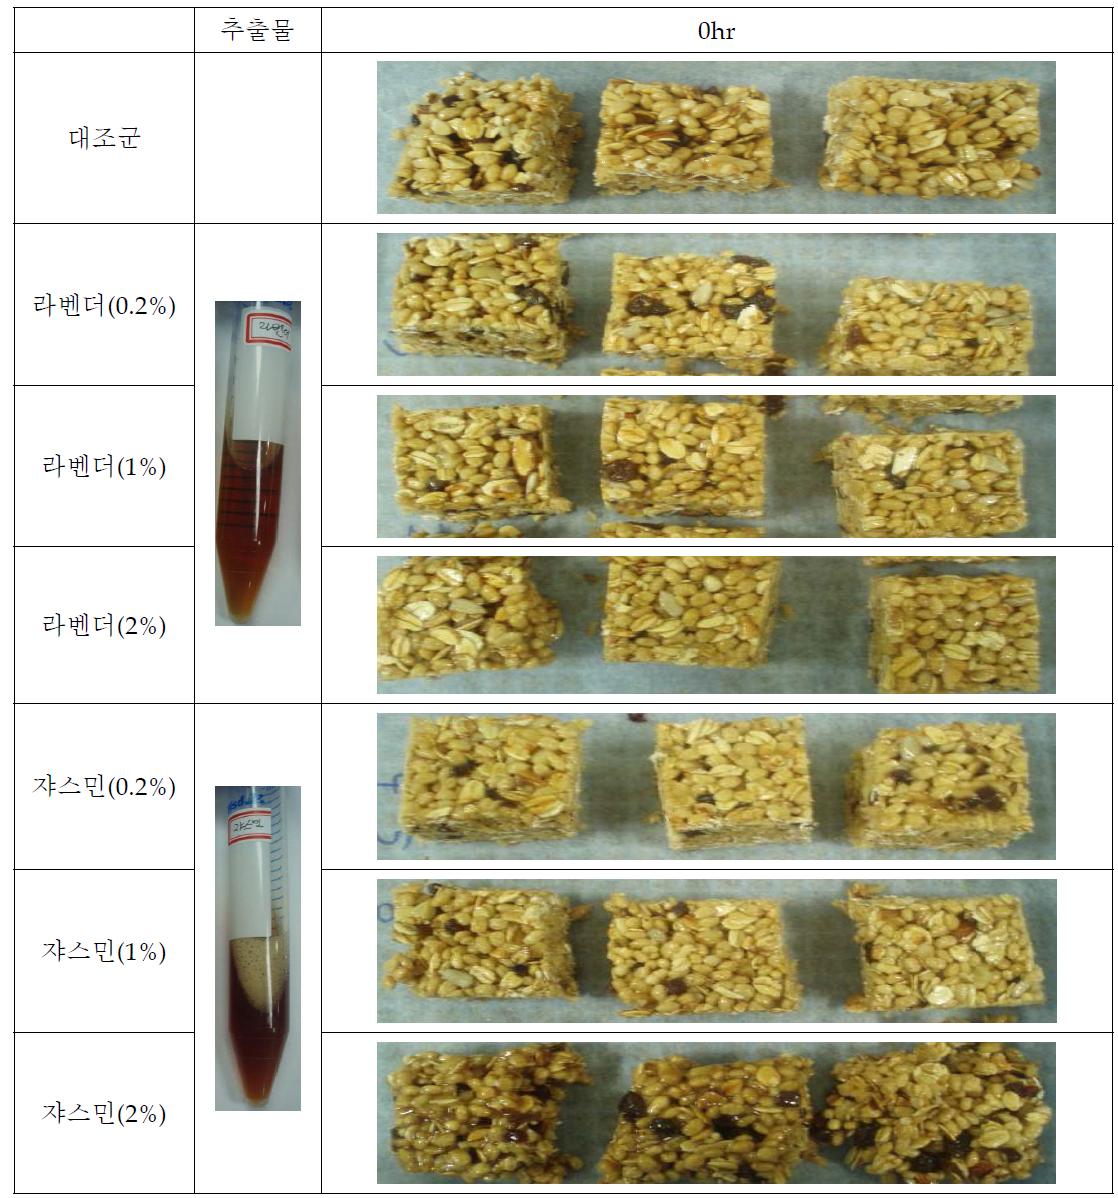 라벤더 추출물과 쟈스민 추출물 농도에 따른 색도의 변화